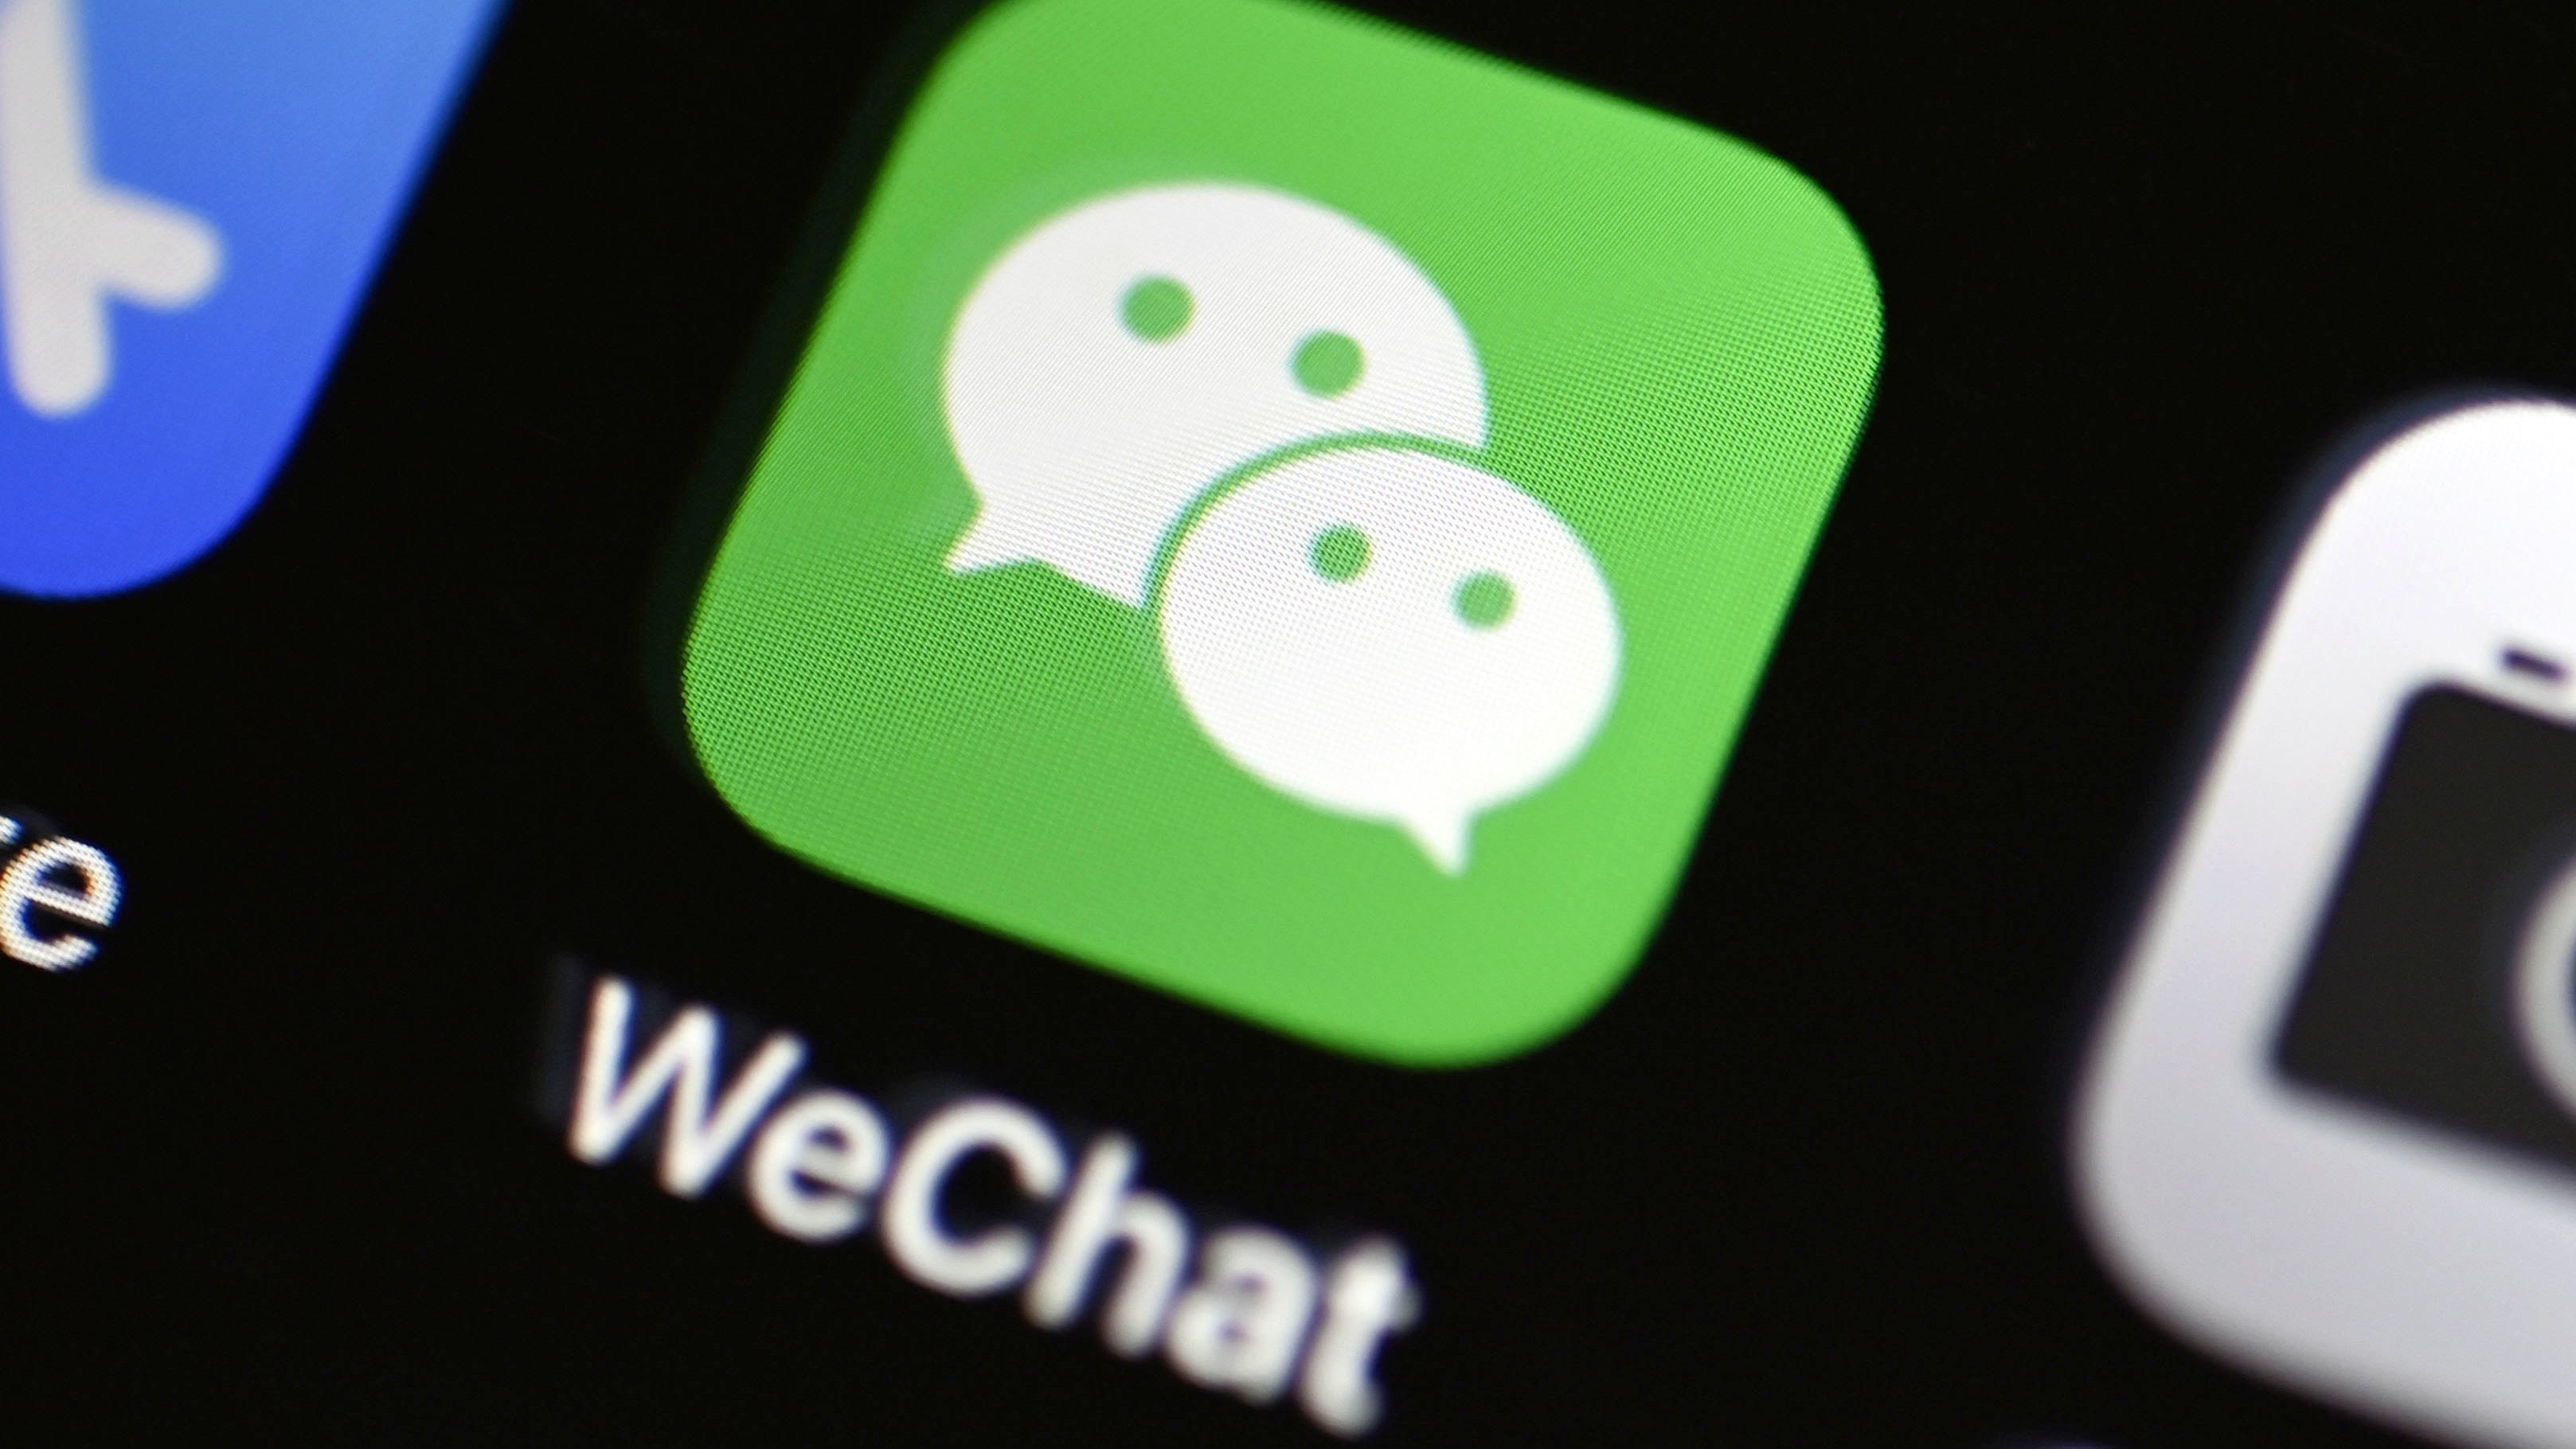 O WeChat é um dos aplicativos mais populares da China, com quase 1 bilhão de usuários. (Fonte: Variety / Reprodução)